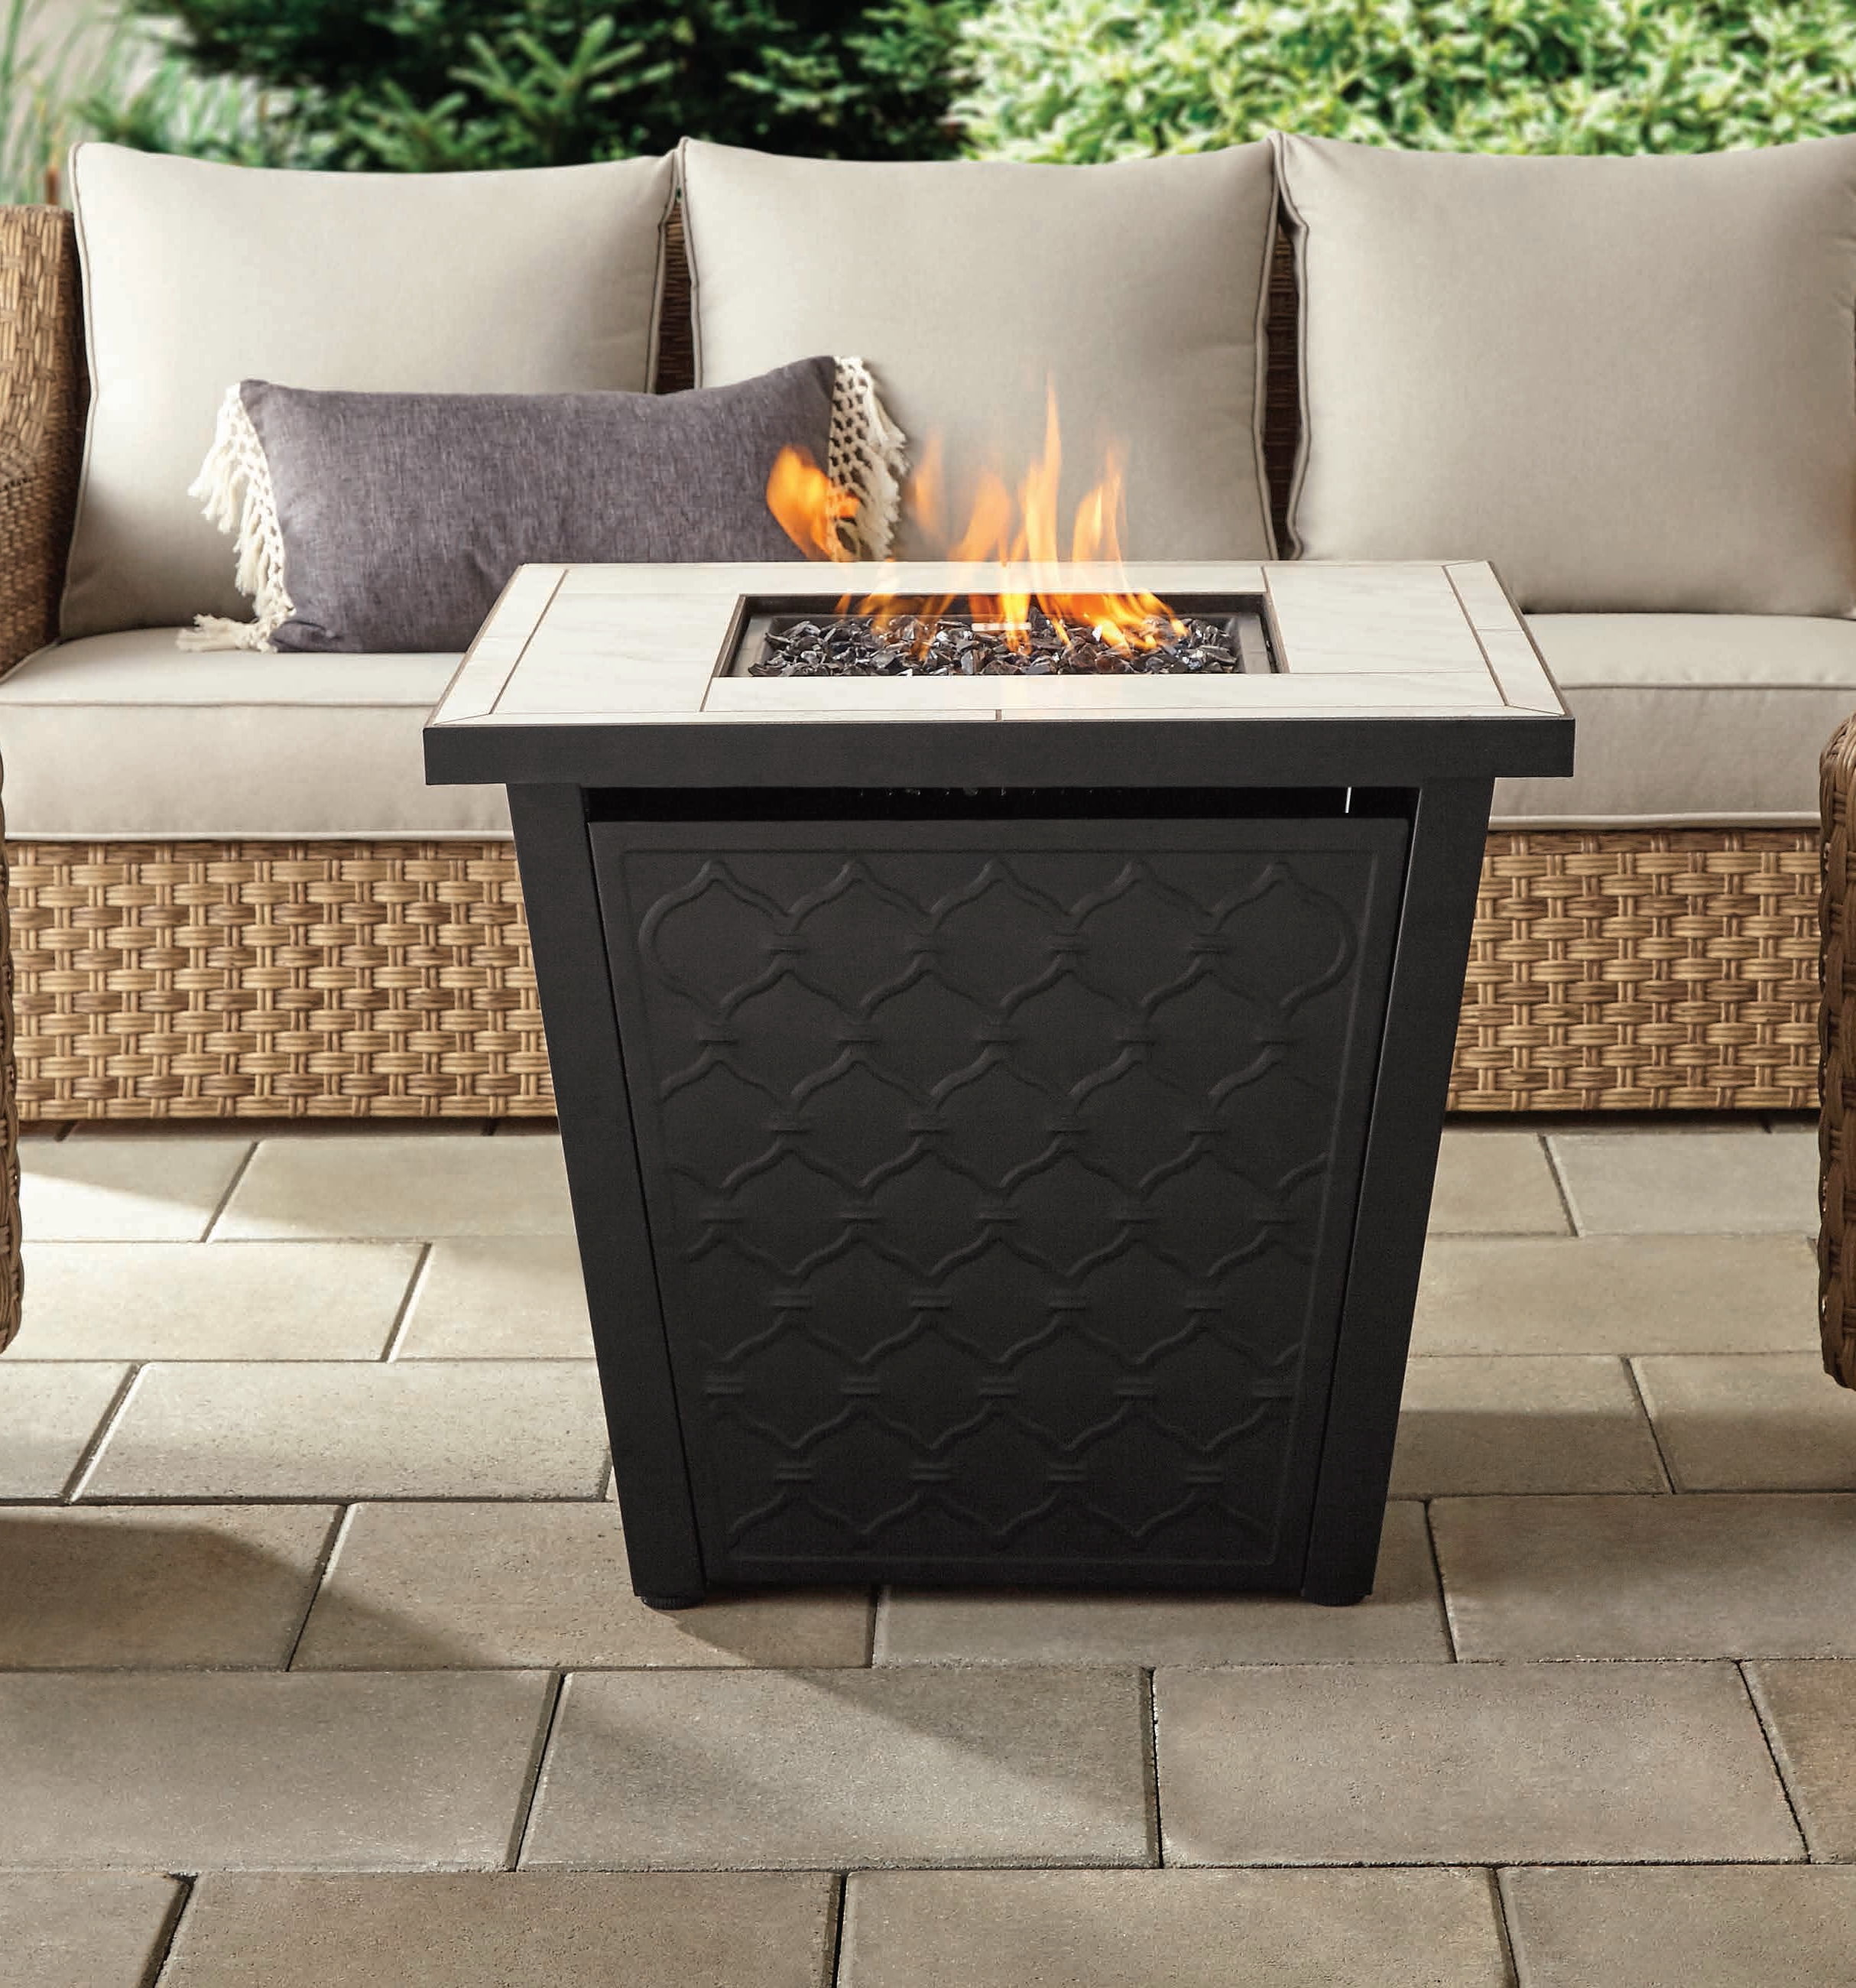 Square Lp Gas Ceramic Tile Fire Pit, Garden Gas Fire Pit Table